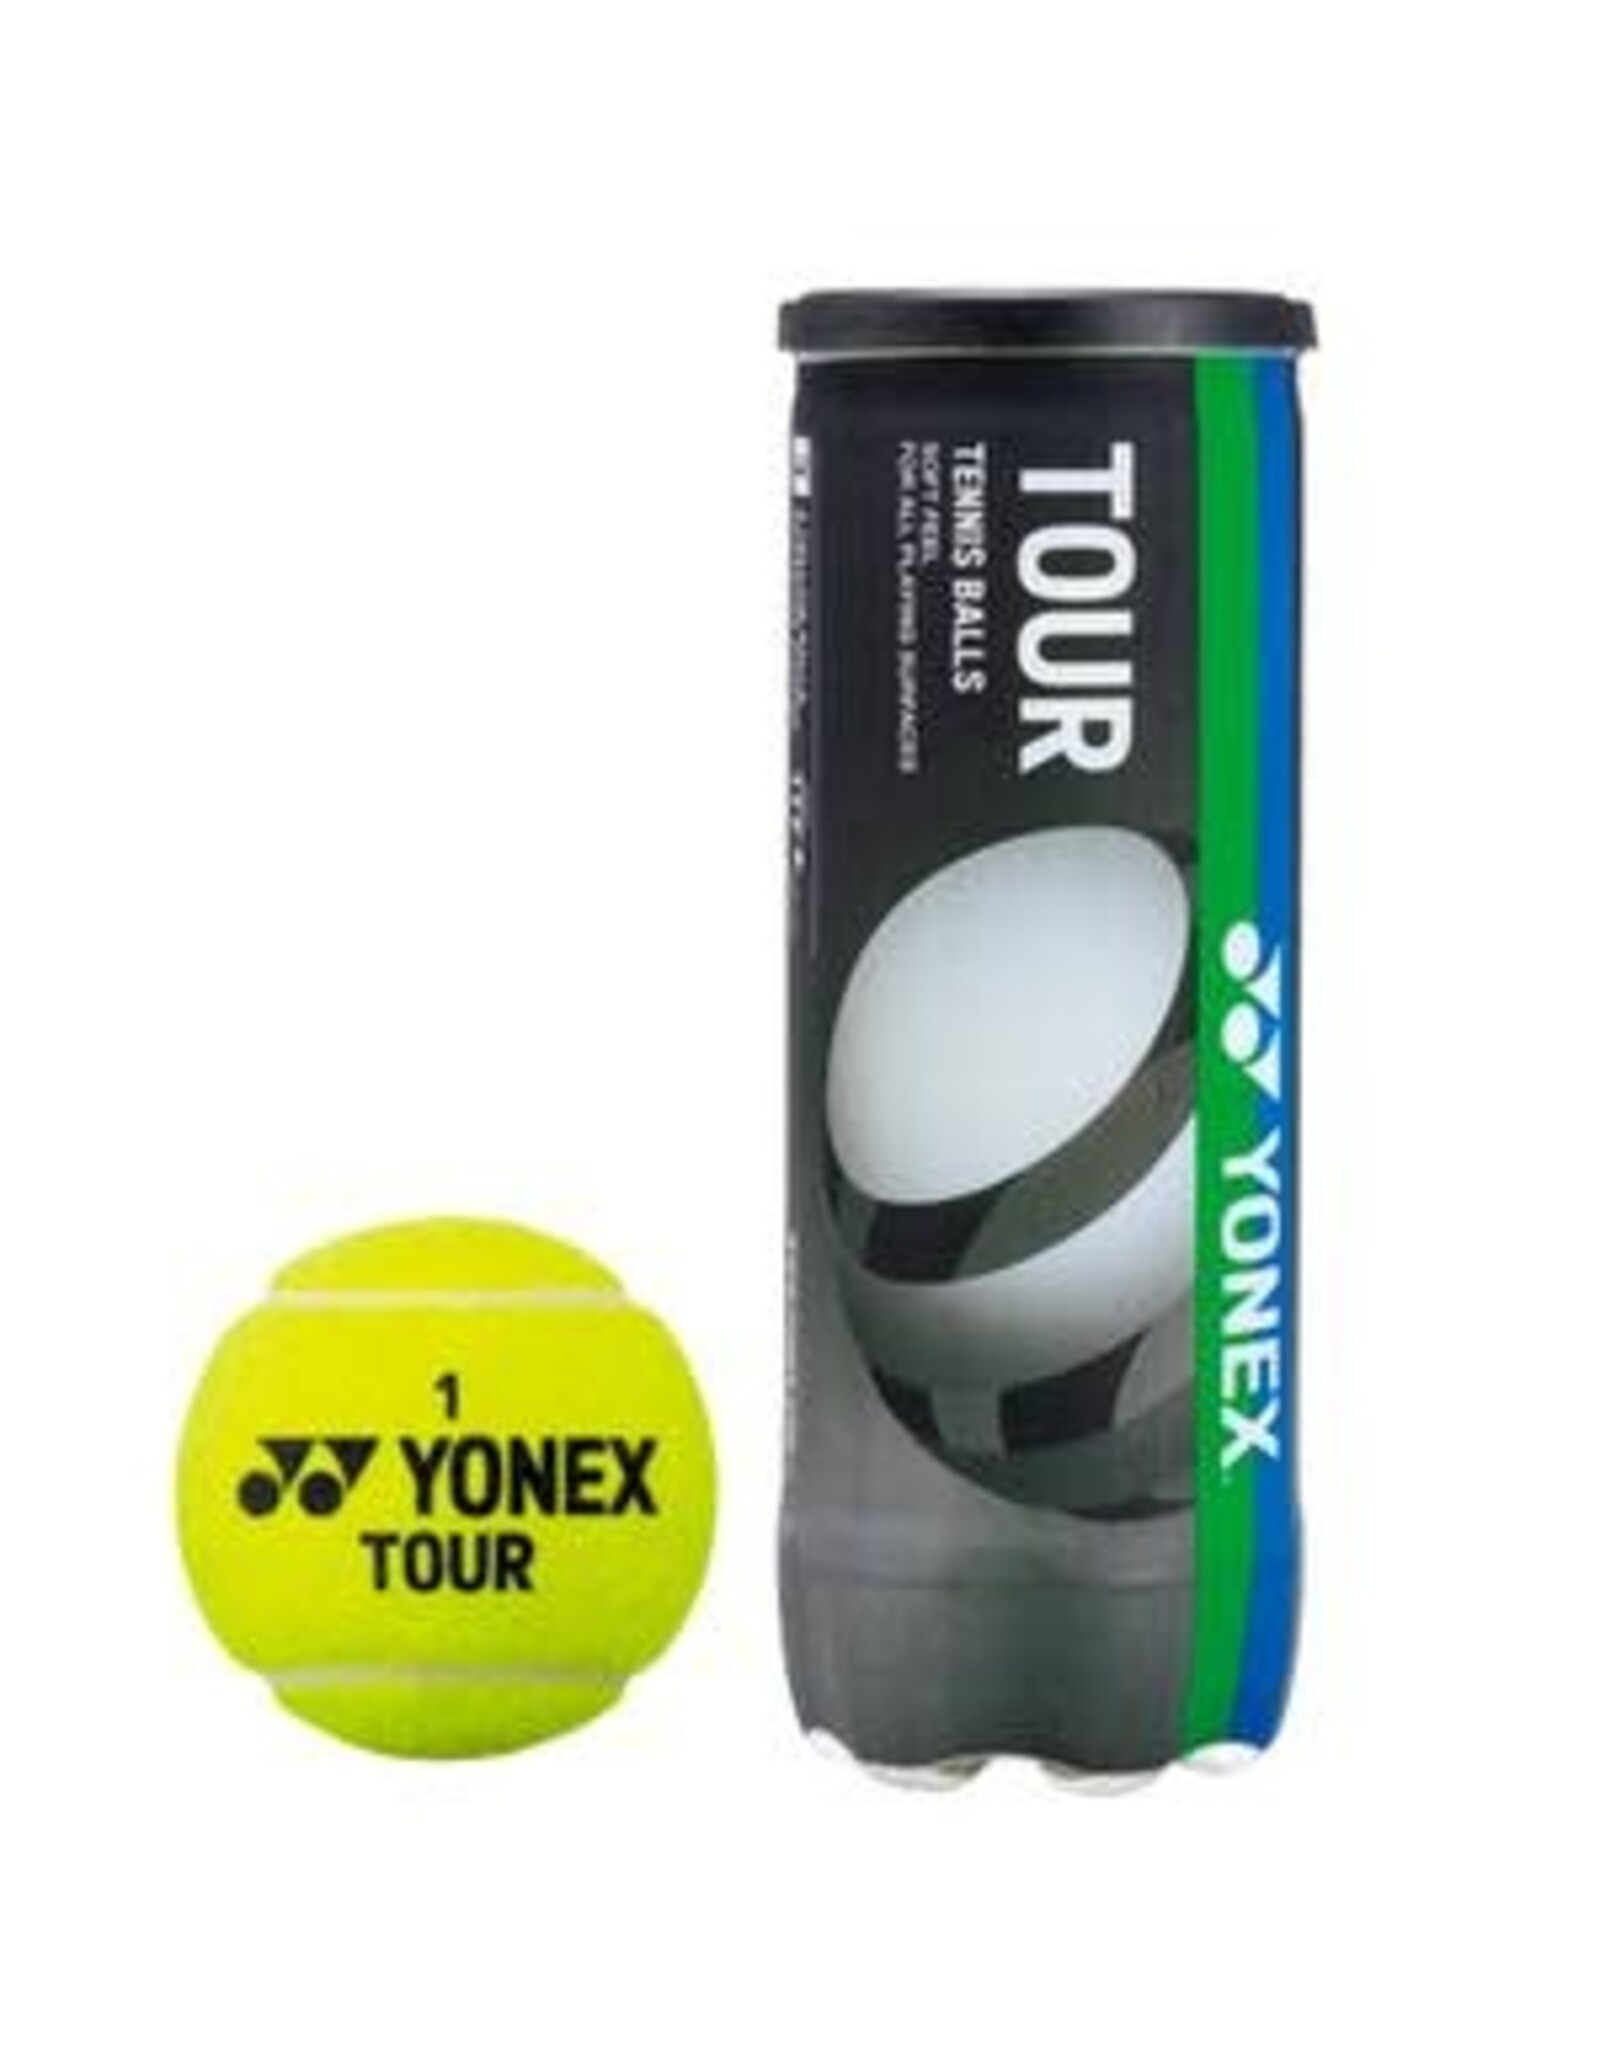 Yonex Yonex Tour Tennis Ball Case (24 Can)